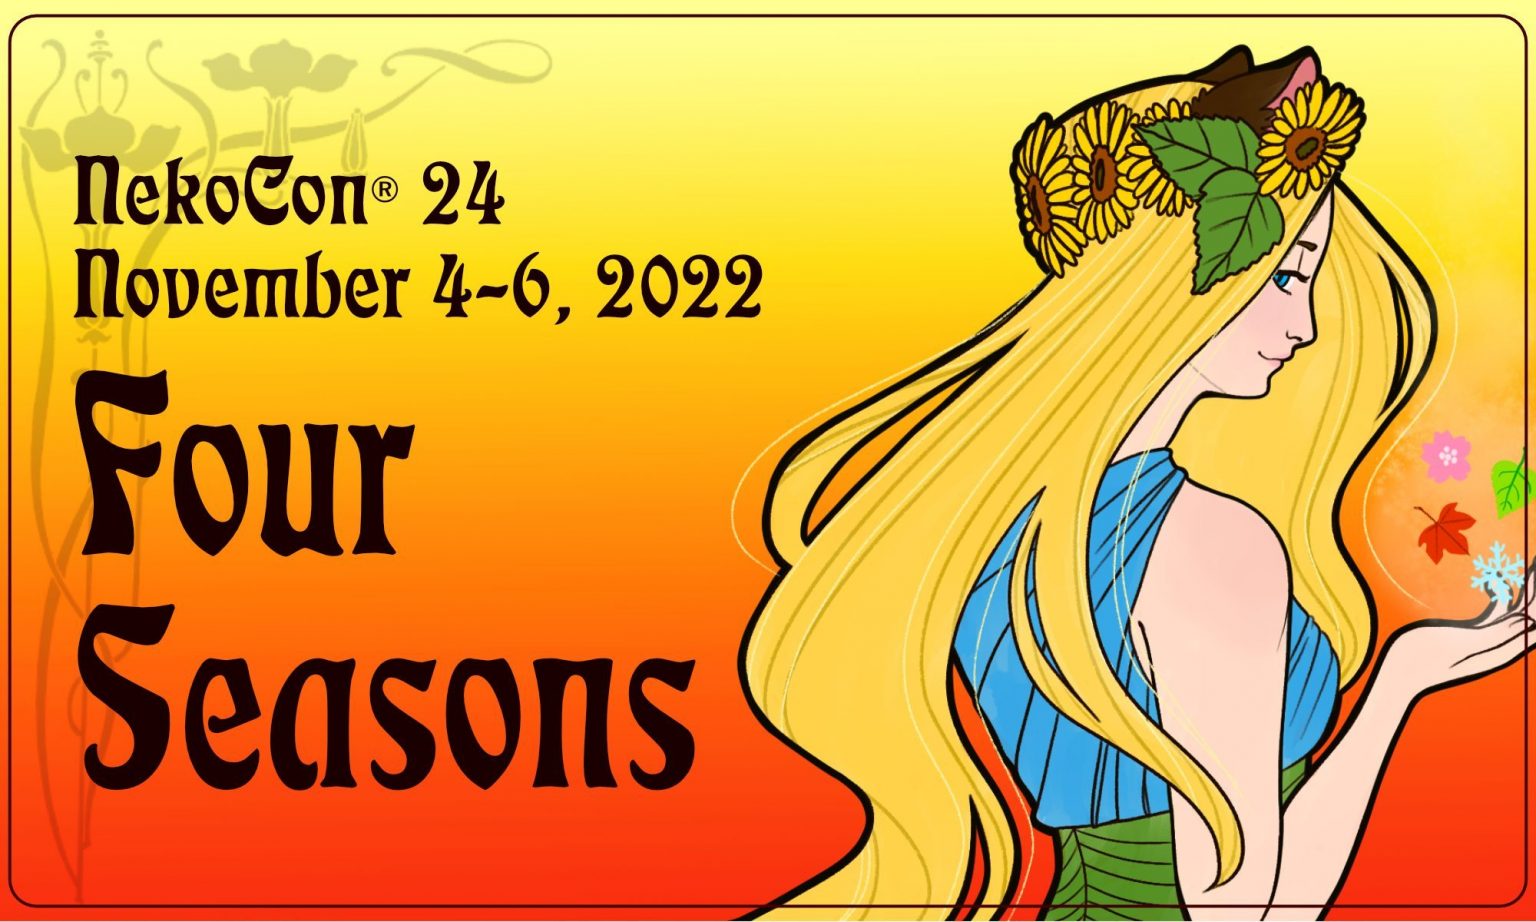 NekoCon 24 Nov. 46, 2022 Hampton Roads Convention Center Hampton,VA